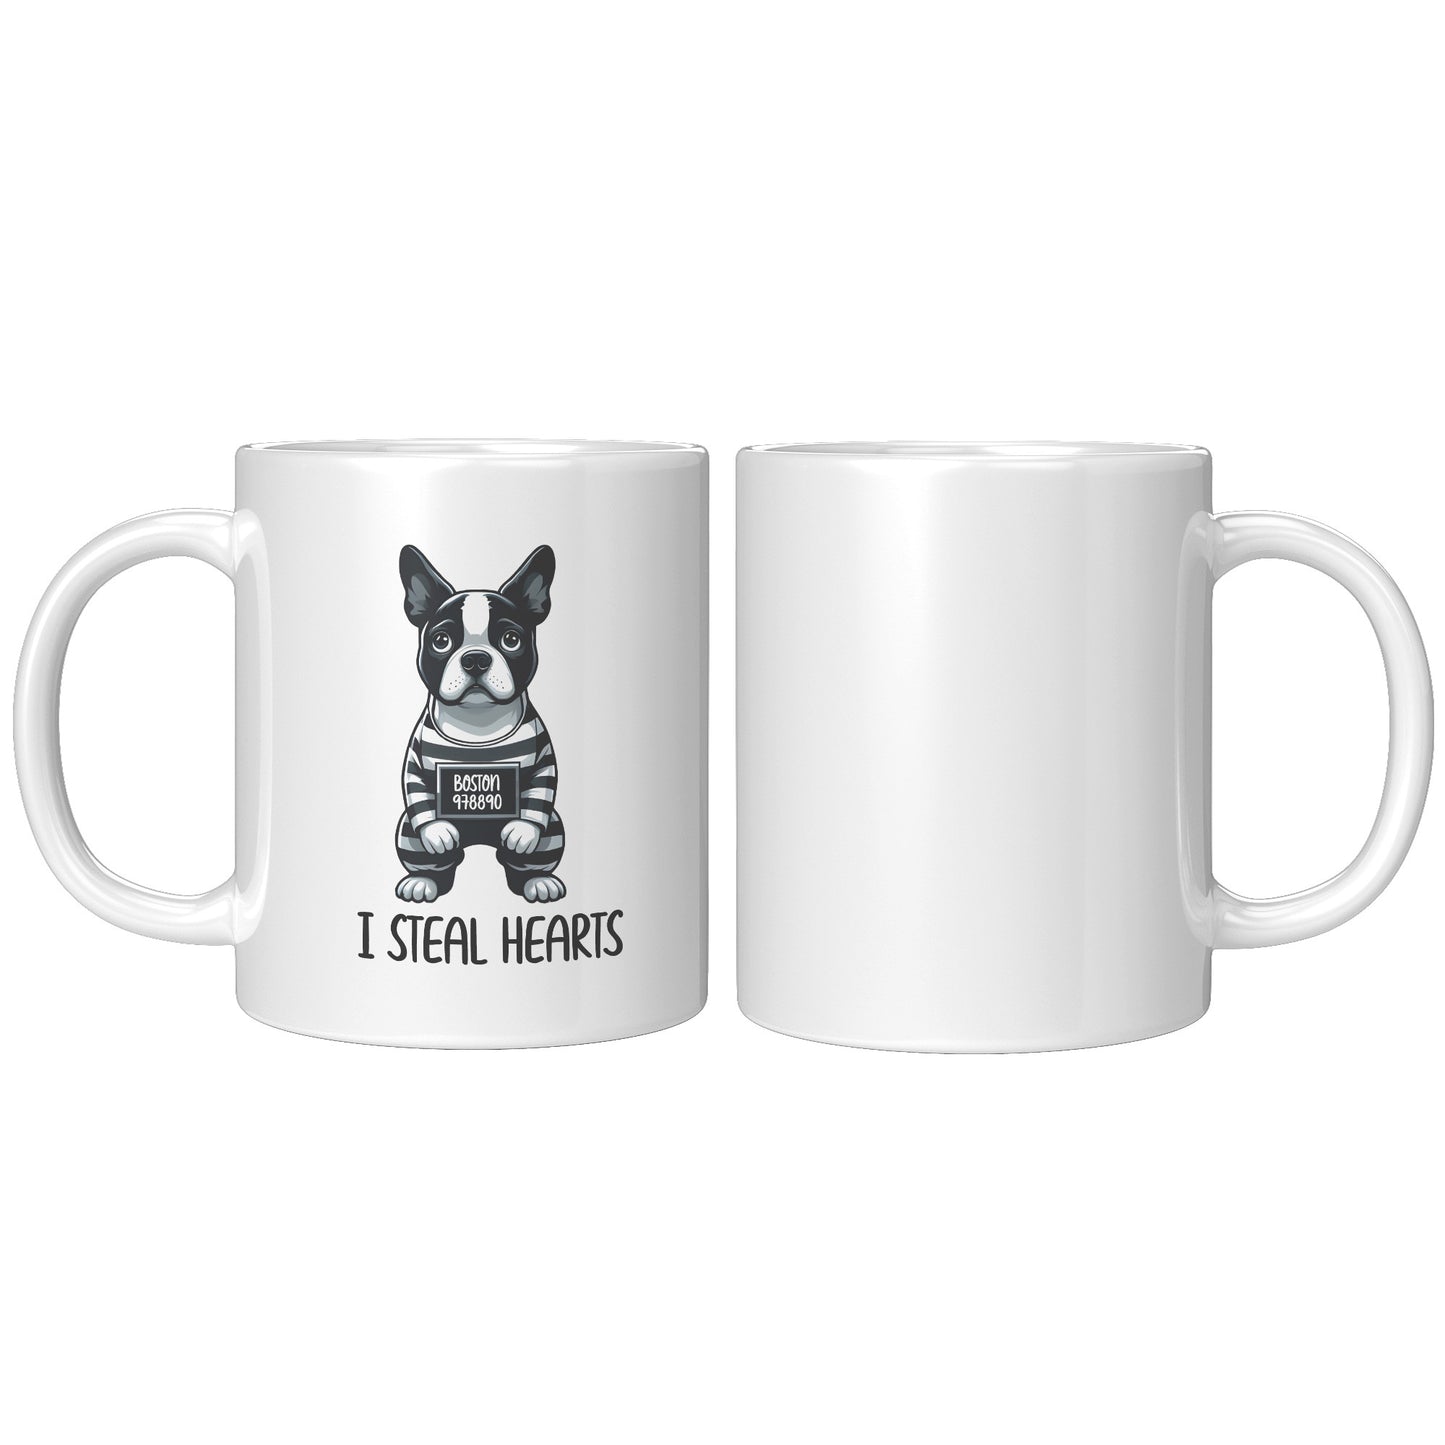 Maisie -Mug for Boston Terrier lovers